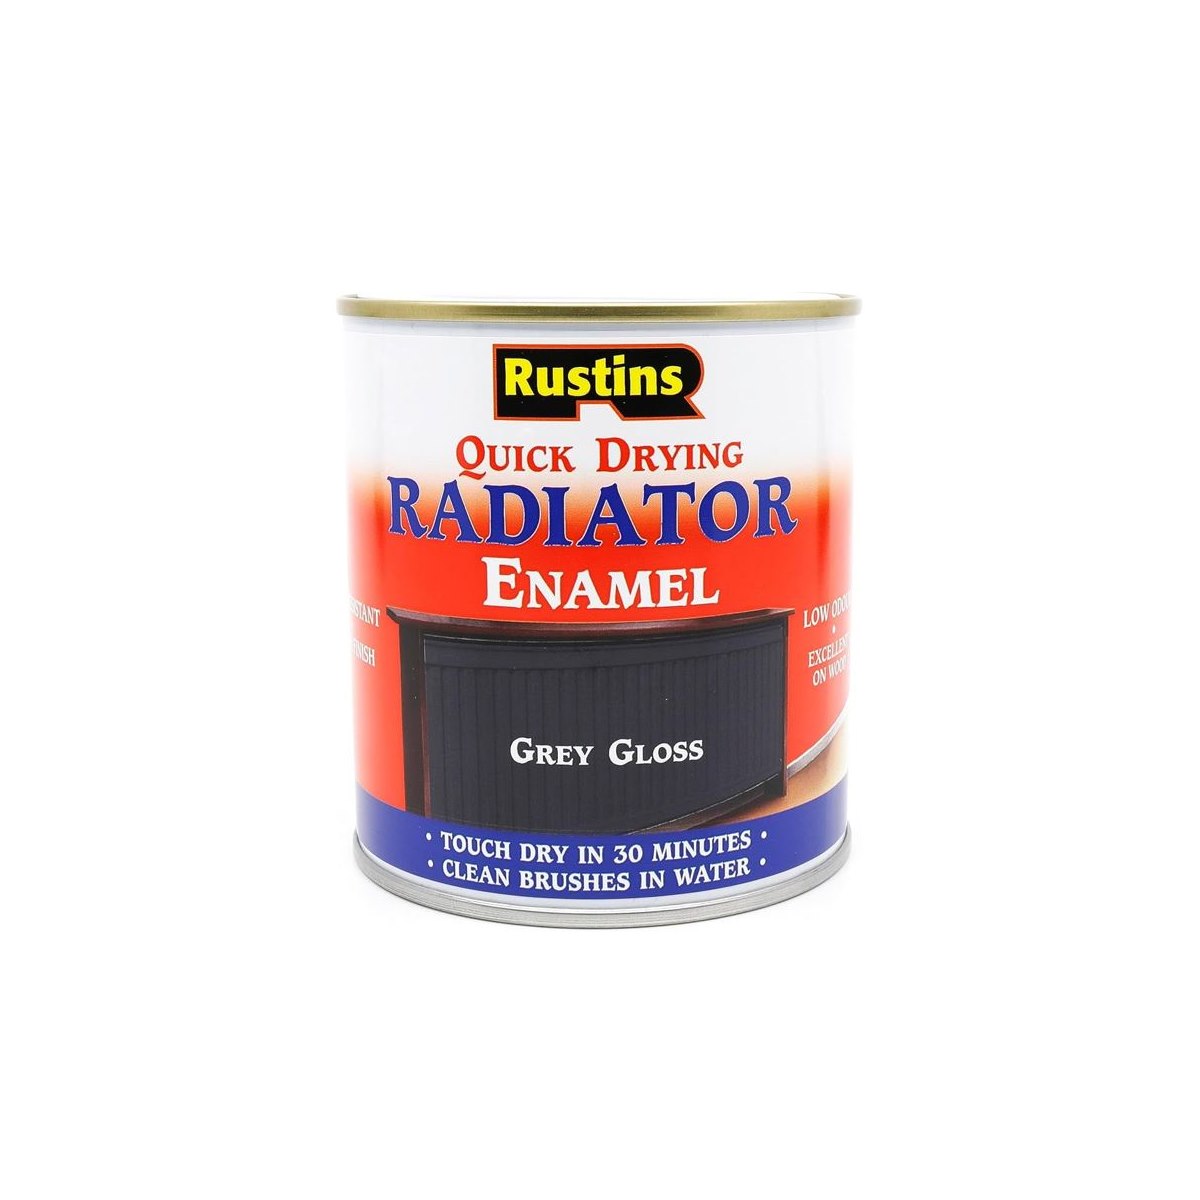 Rustins Quick Drying Radiator Enamel Grey Gloss 500ml